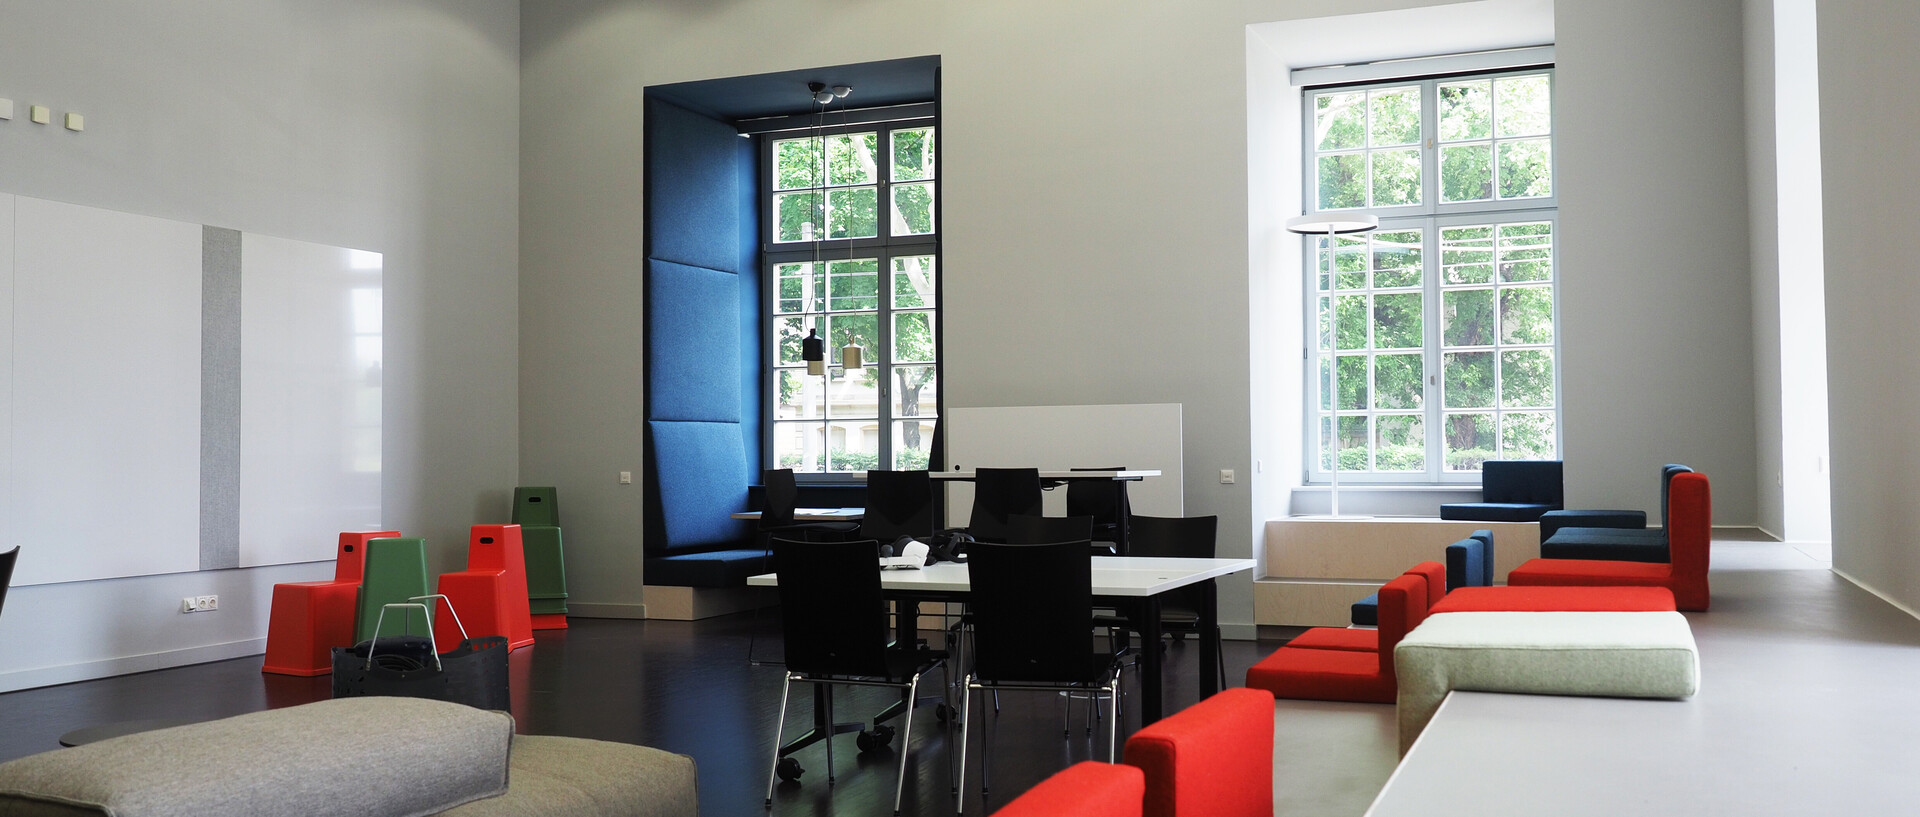 In einem hellen Raum der Bibliothek im Schneckenhof liegen bunte Sitzkissen in rot und blau verteilt. An den großen Fenstern sind gemütliche Ecken.